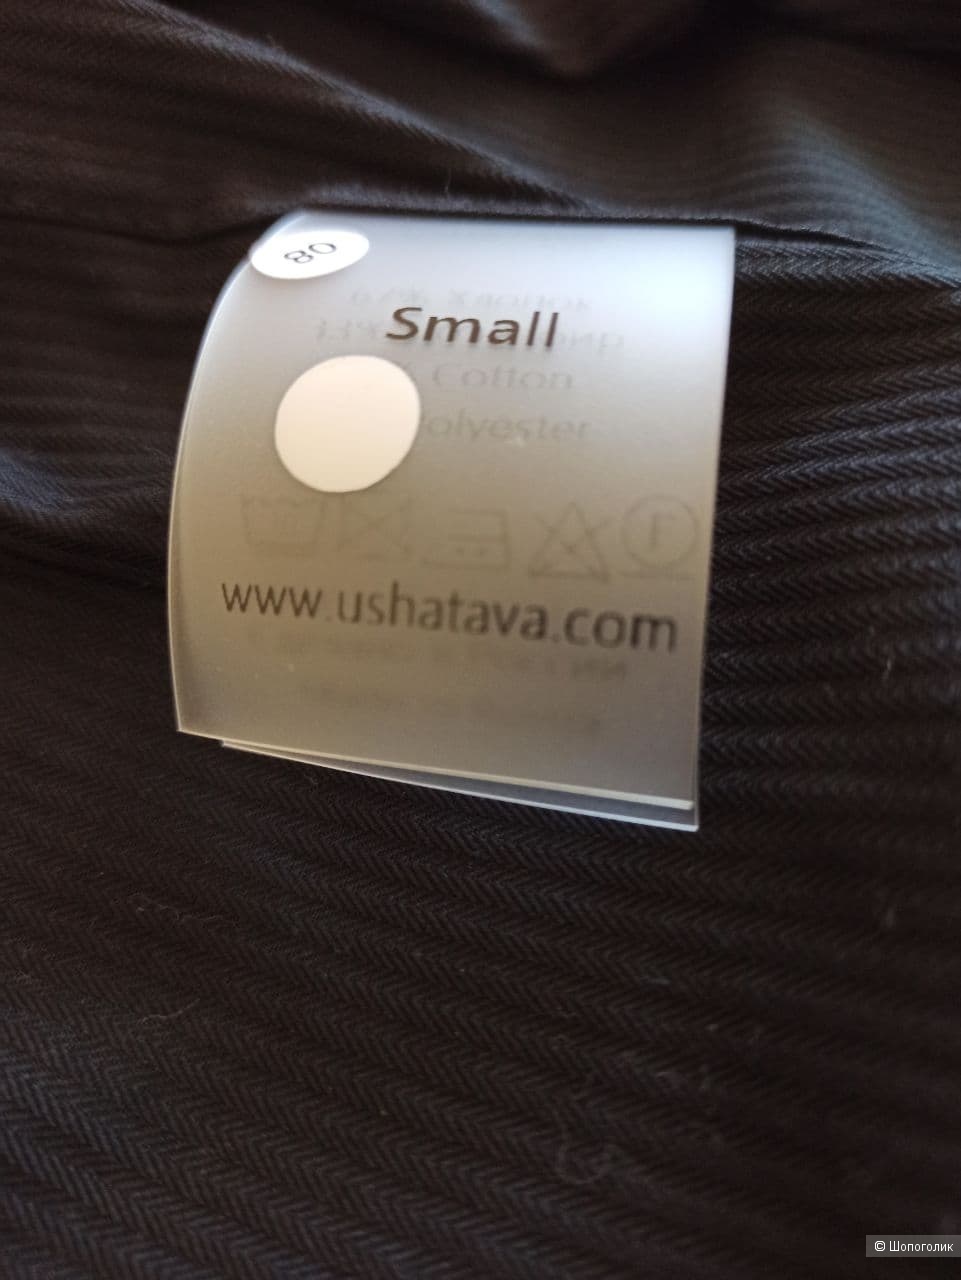 Рубашка Ushatava one size